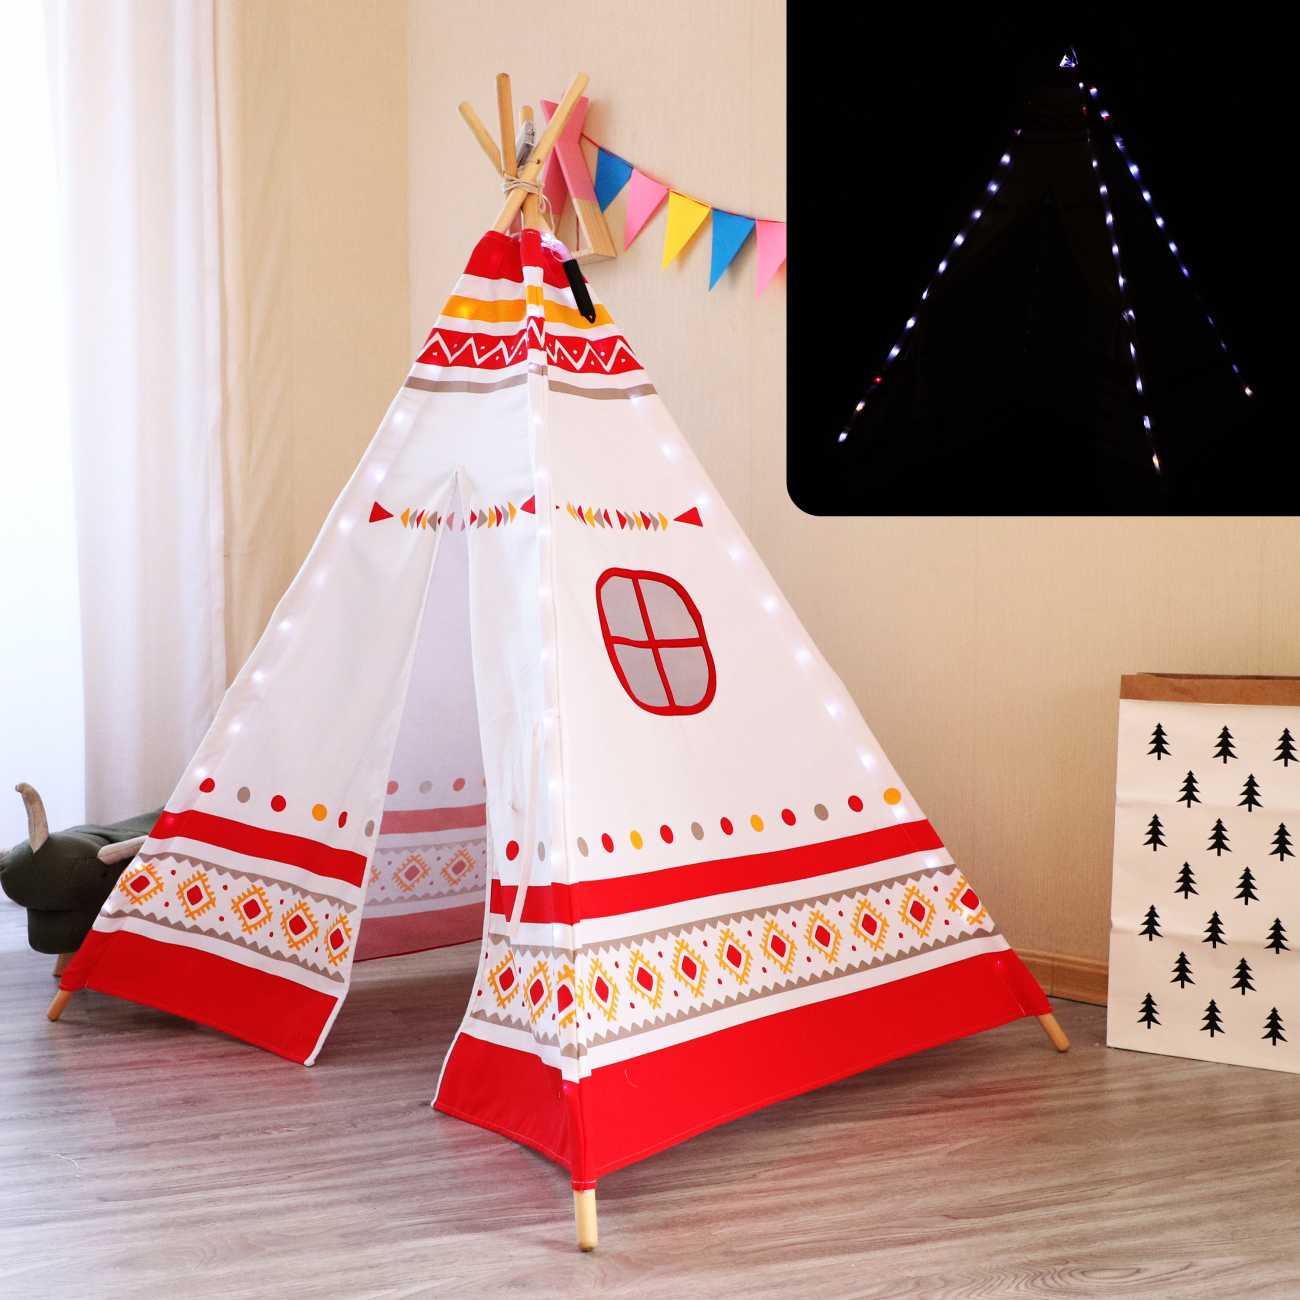 Kinder Spielzelt LED Tipi Zelt, Teeepee, Indianerzelt